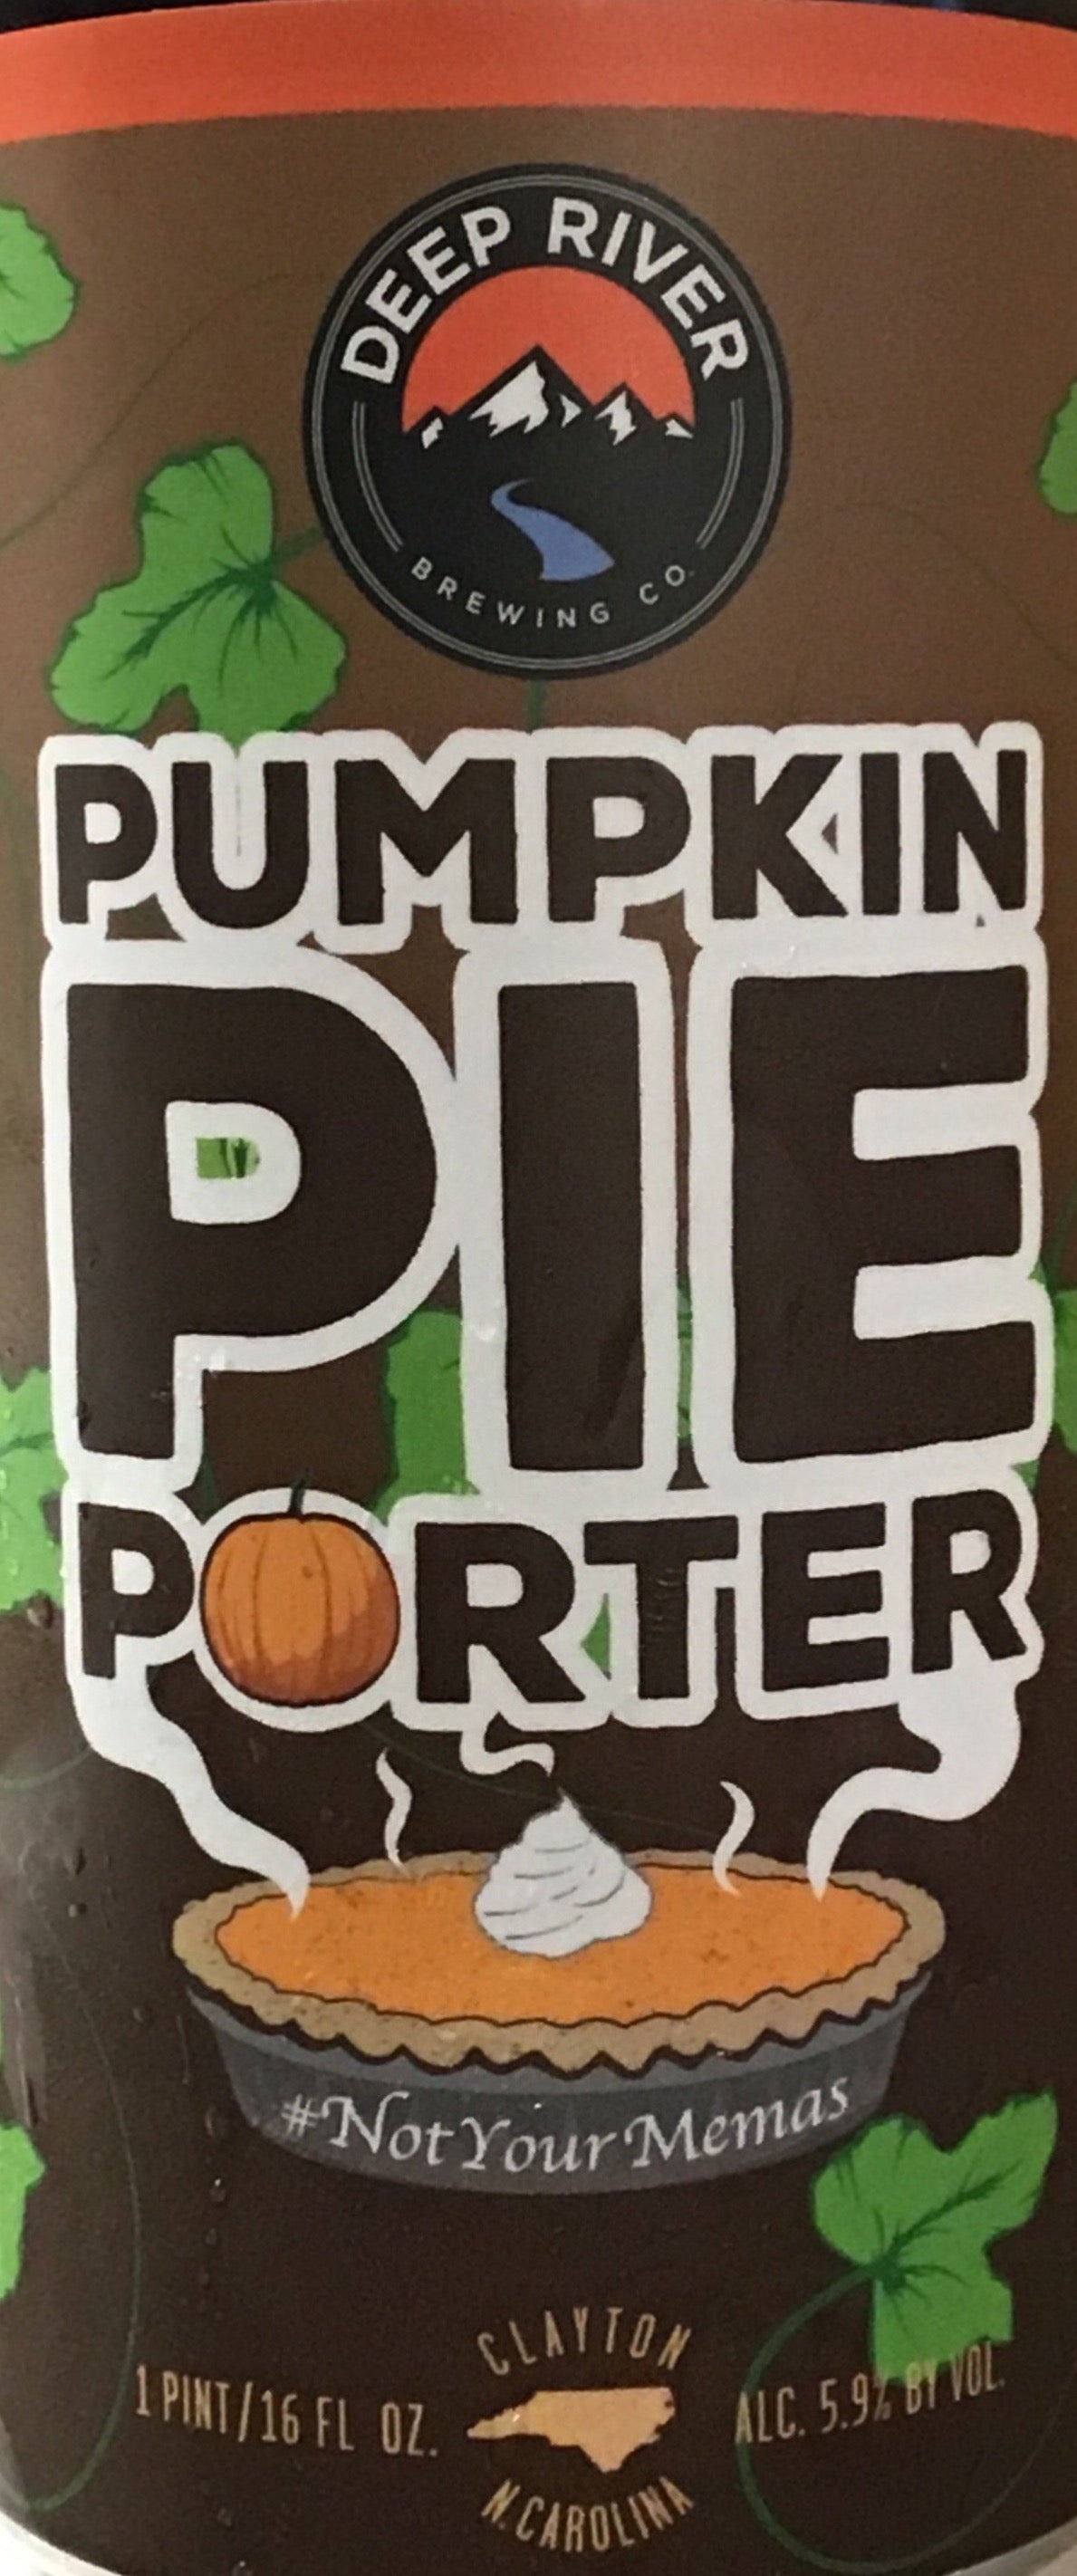 Deep River - Pumpkin Pie Porter - 4 pack